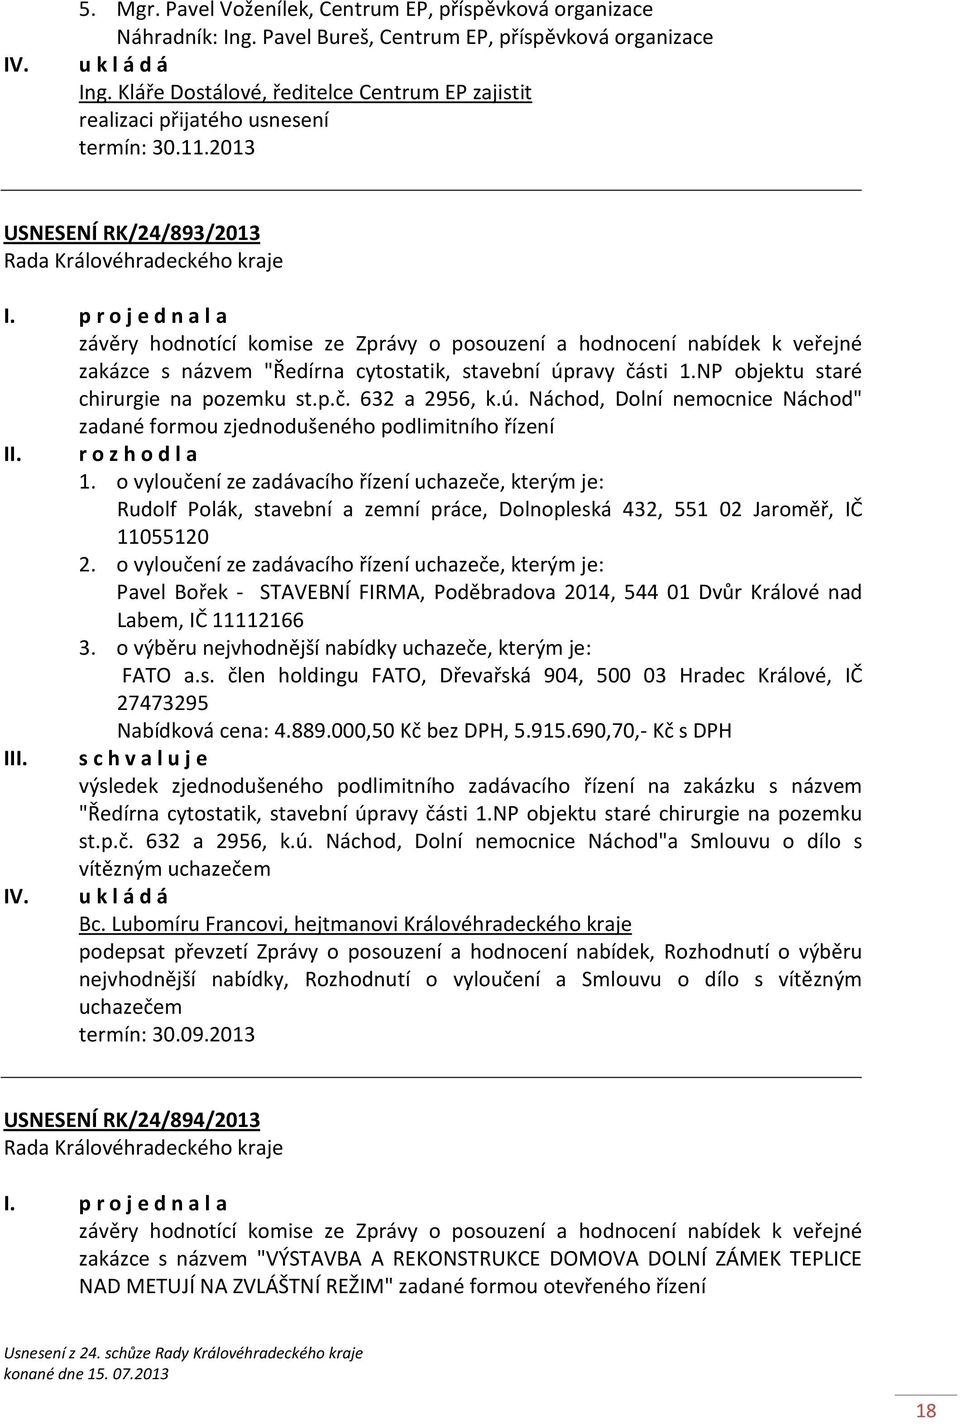 2013 USNESENÍ RK/24/893/2013 závěry hodnotící komise ze Zprávy o posouzení a hodnocení nabídek k veřejné zakázce s názvem "Ředírna cytostatik, stavební úpravy části 1.